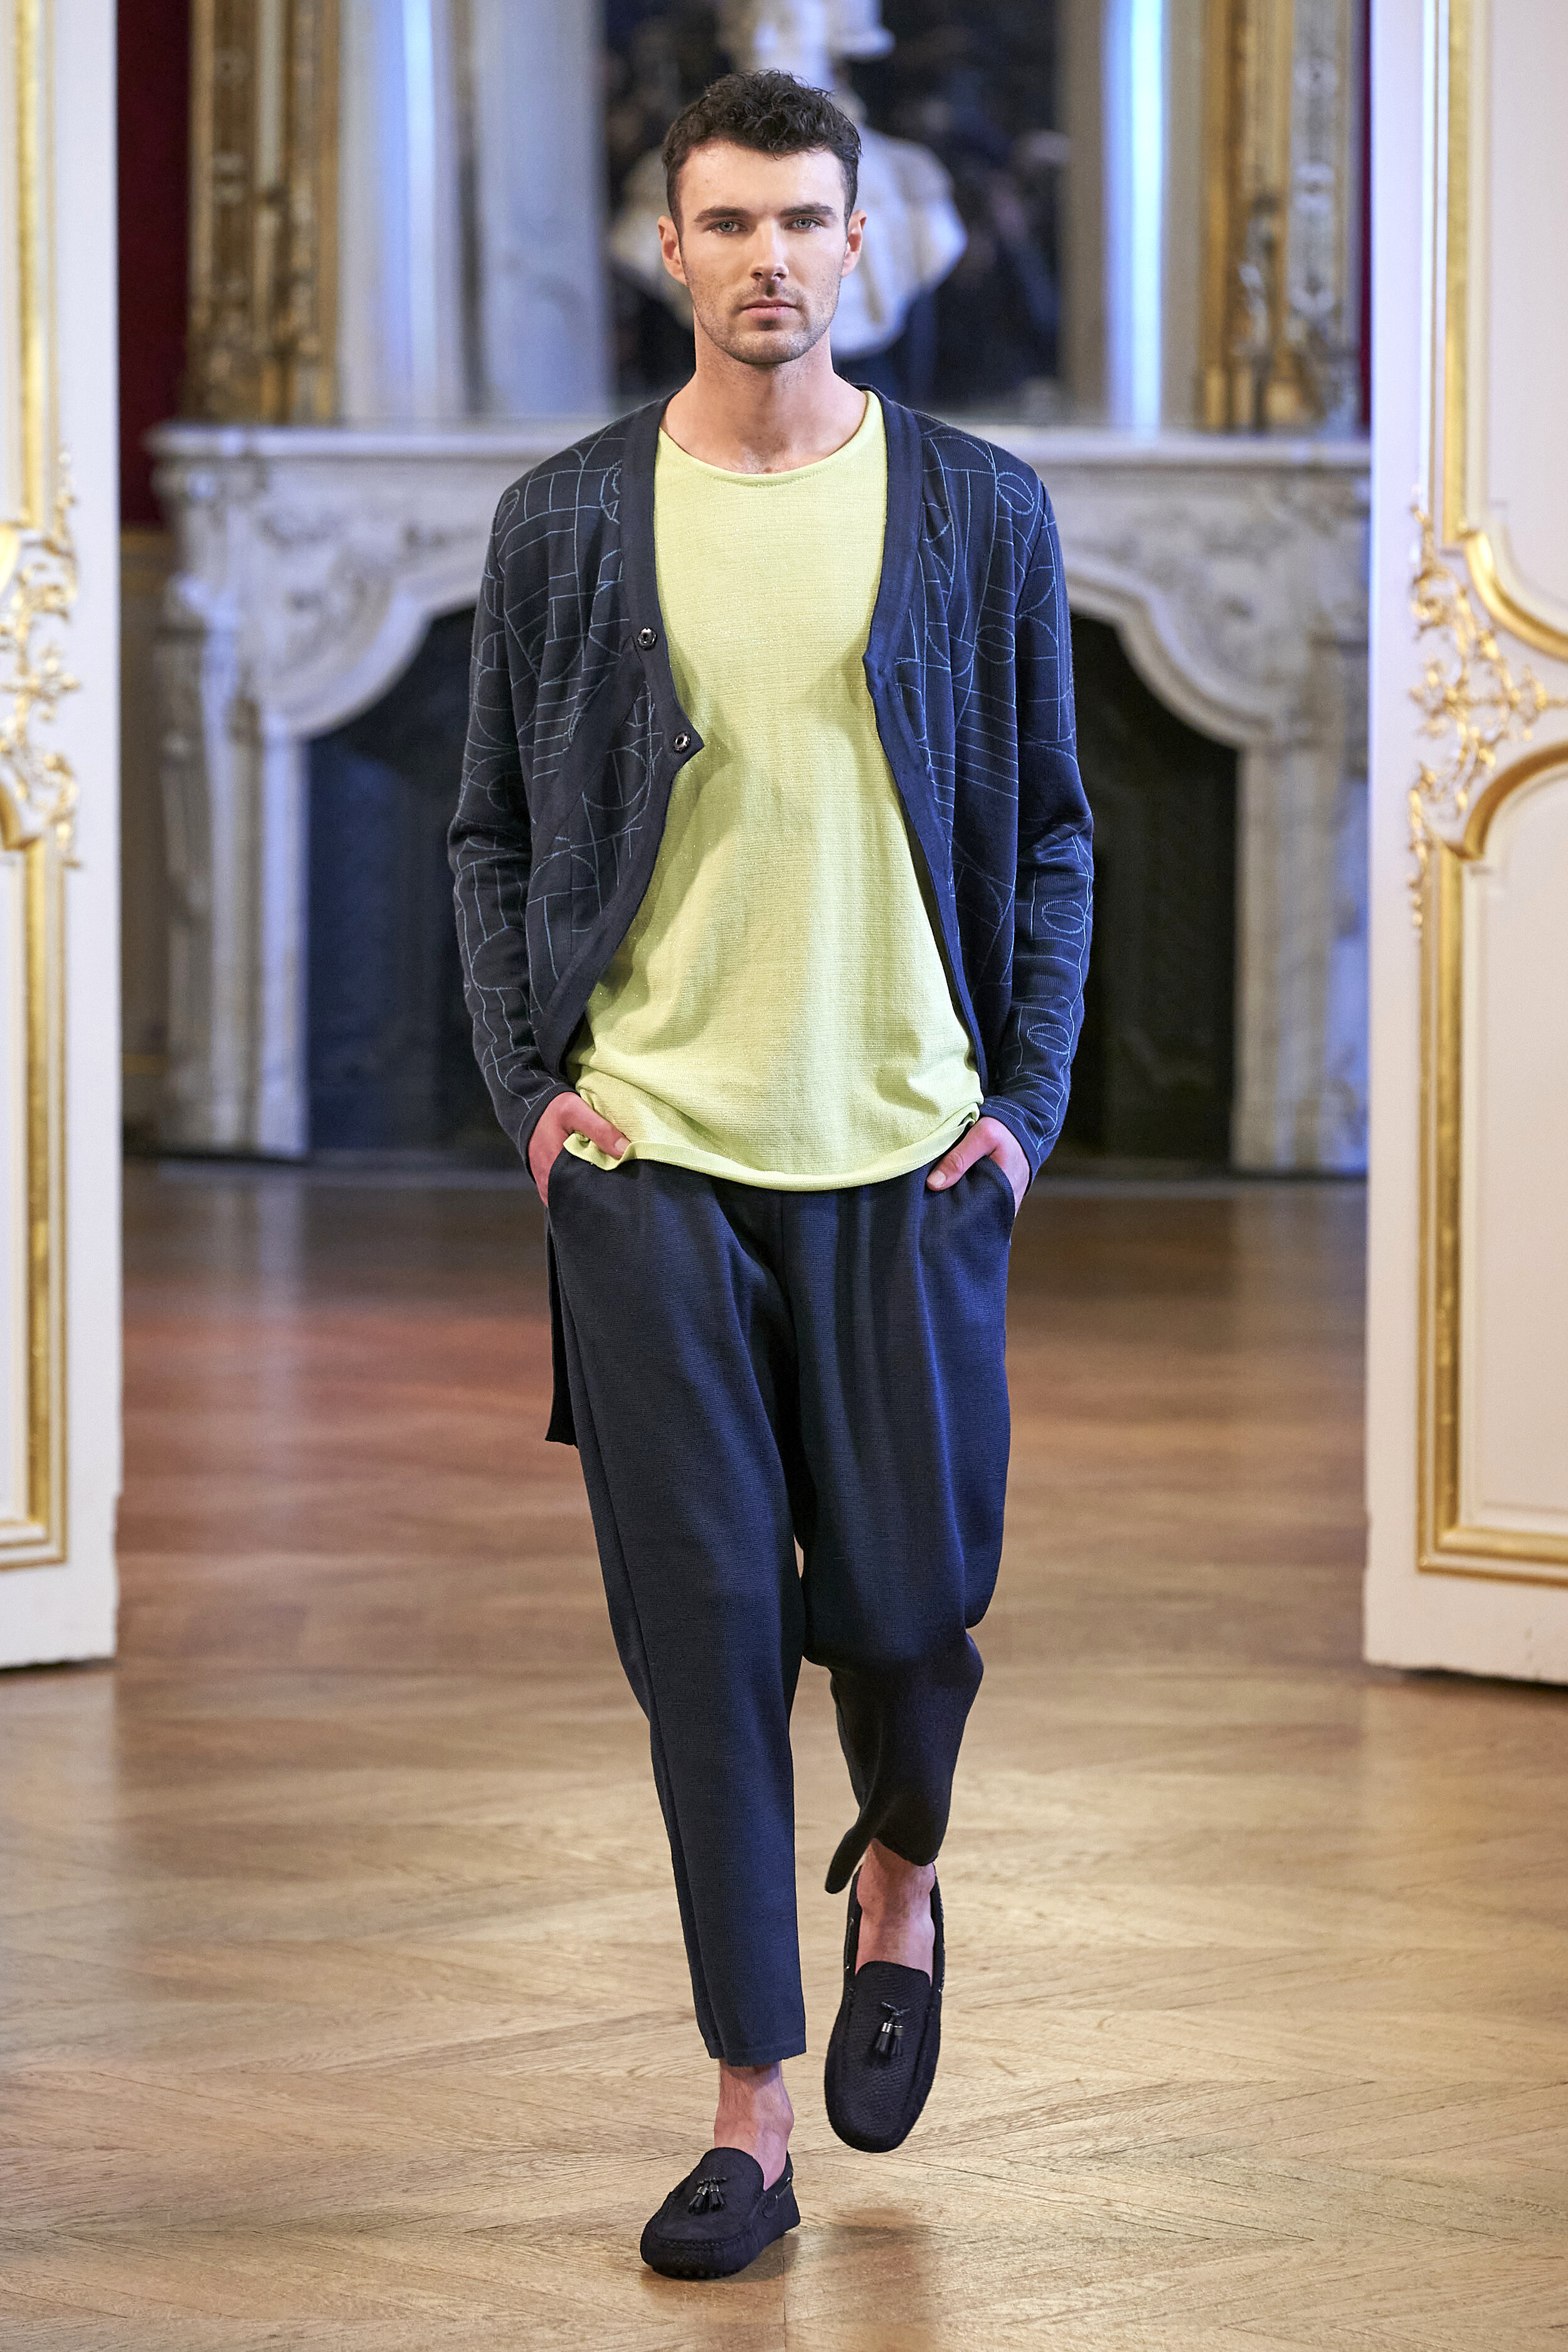 Maria Aristidou Couture SS 2020 Paris Fashion Week Fashionado